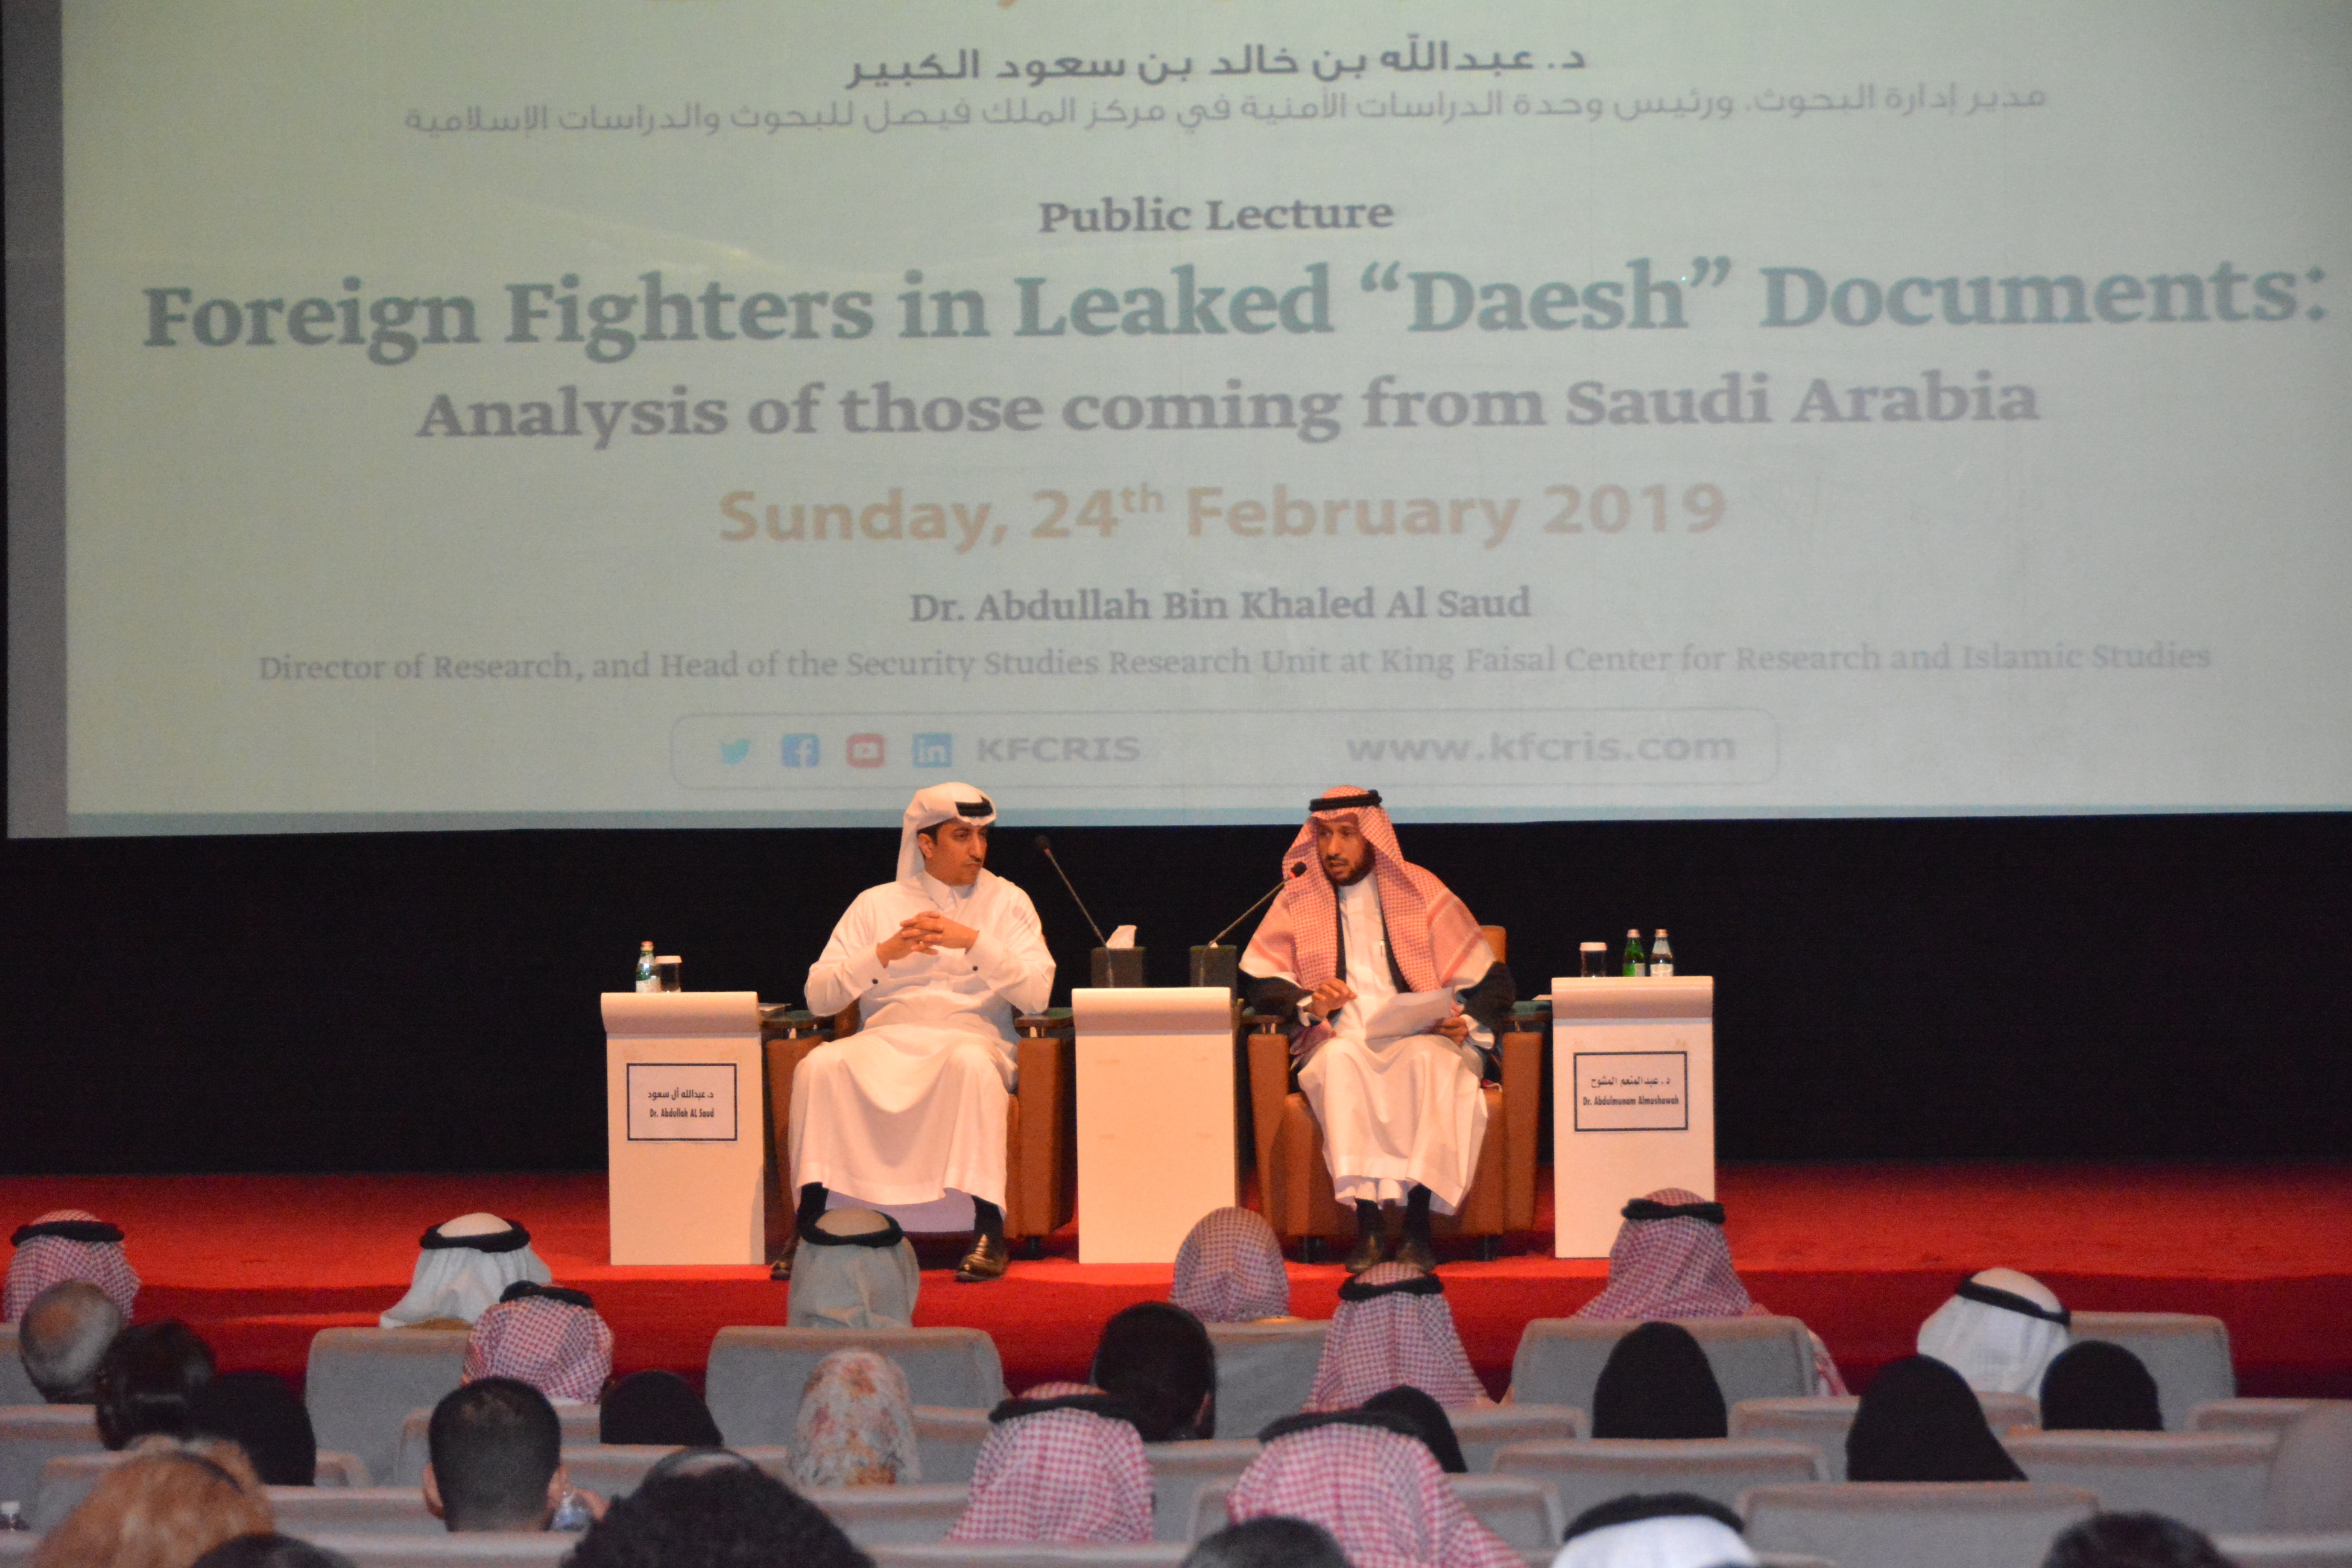 محاضرة "المقاتلون الأجانب في وثائق داعش المُسرَبة دراسة تحليلية للقادمين من السعودية"